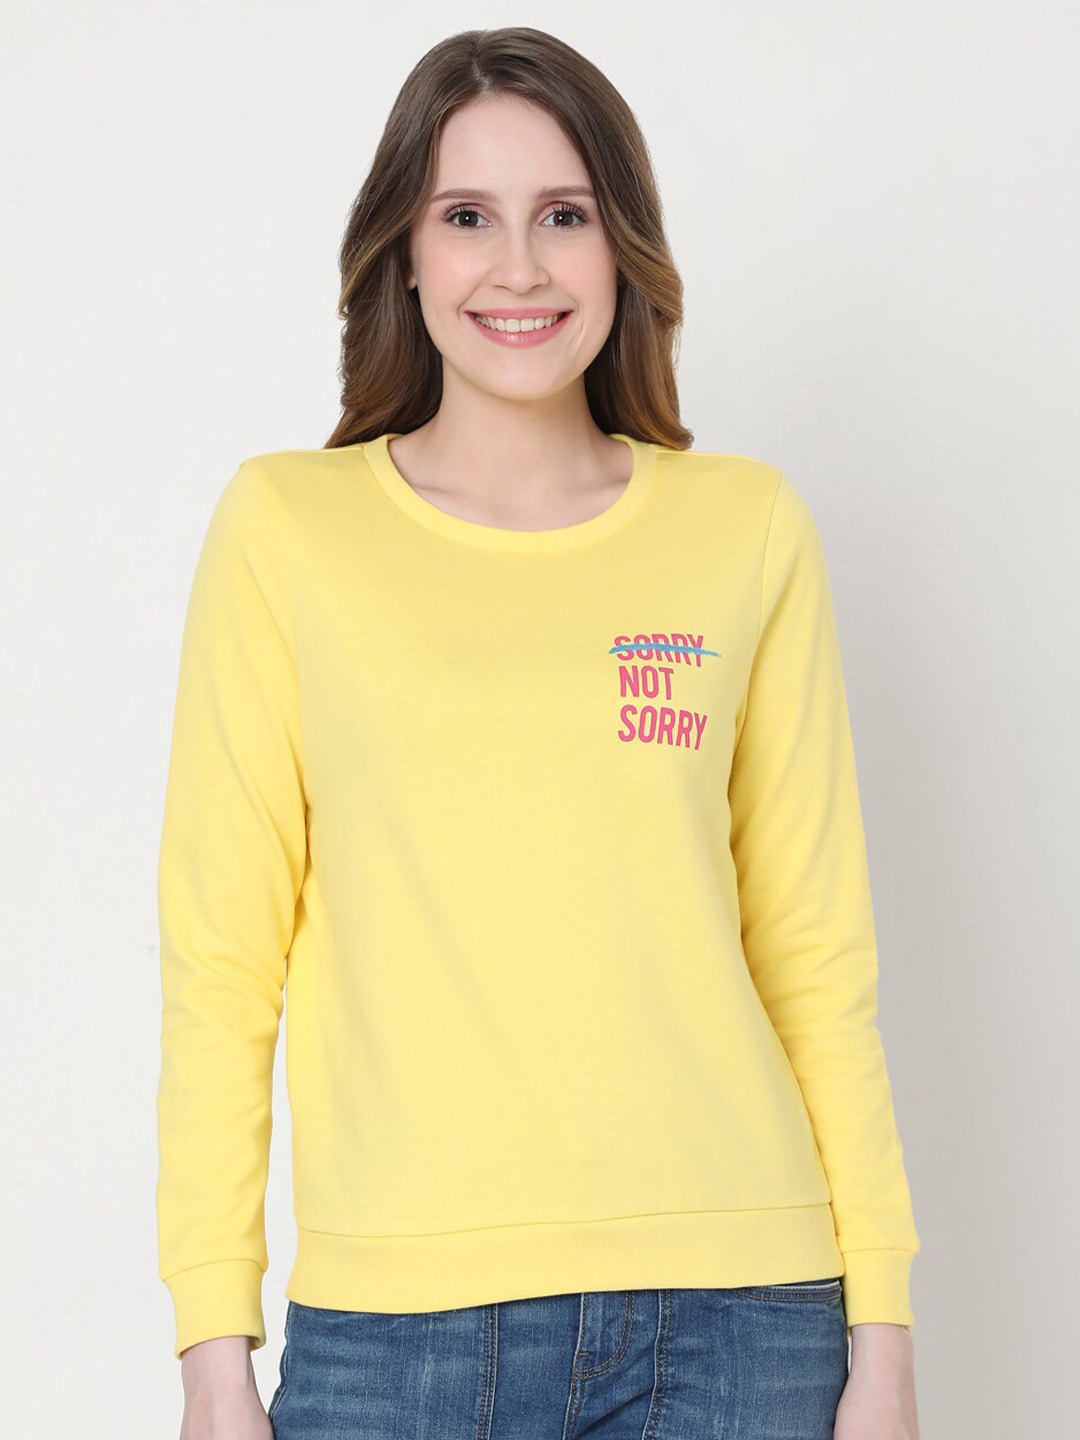 Vero Moda Women Yellow Printed Cotton Sweatshirt Price in India